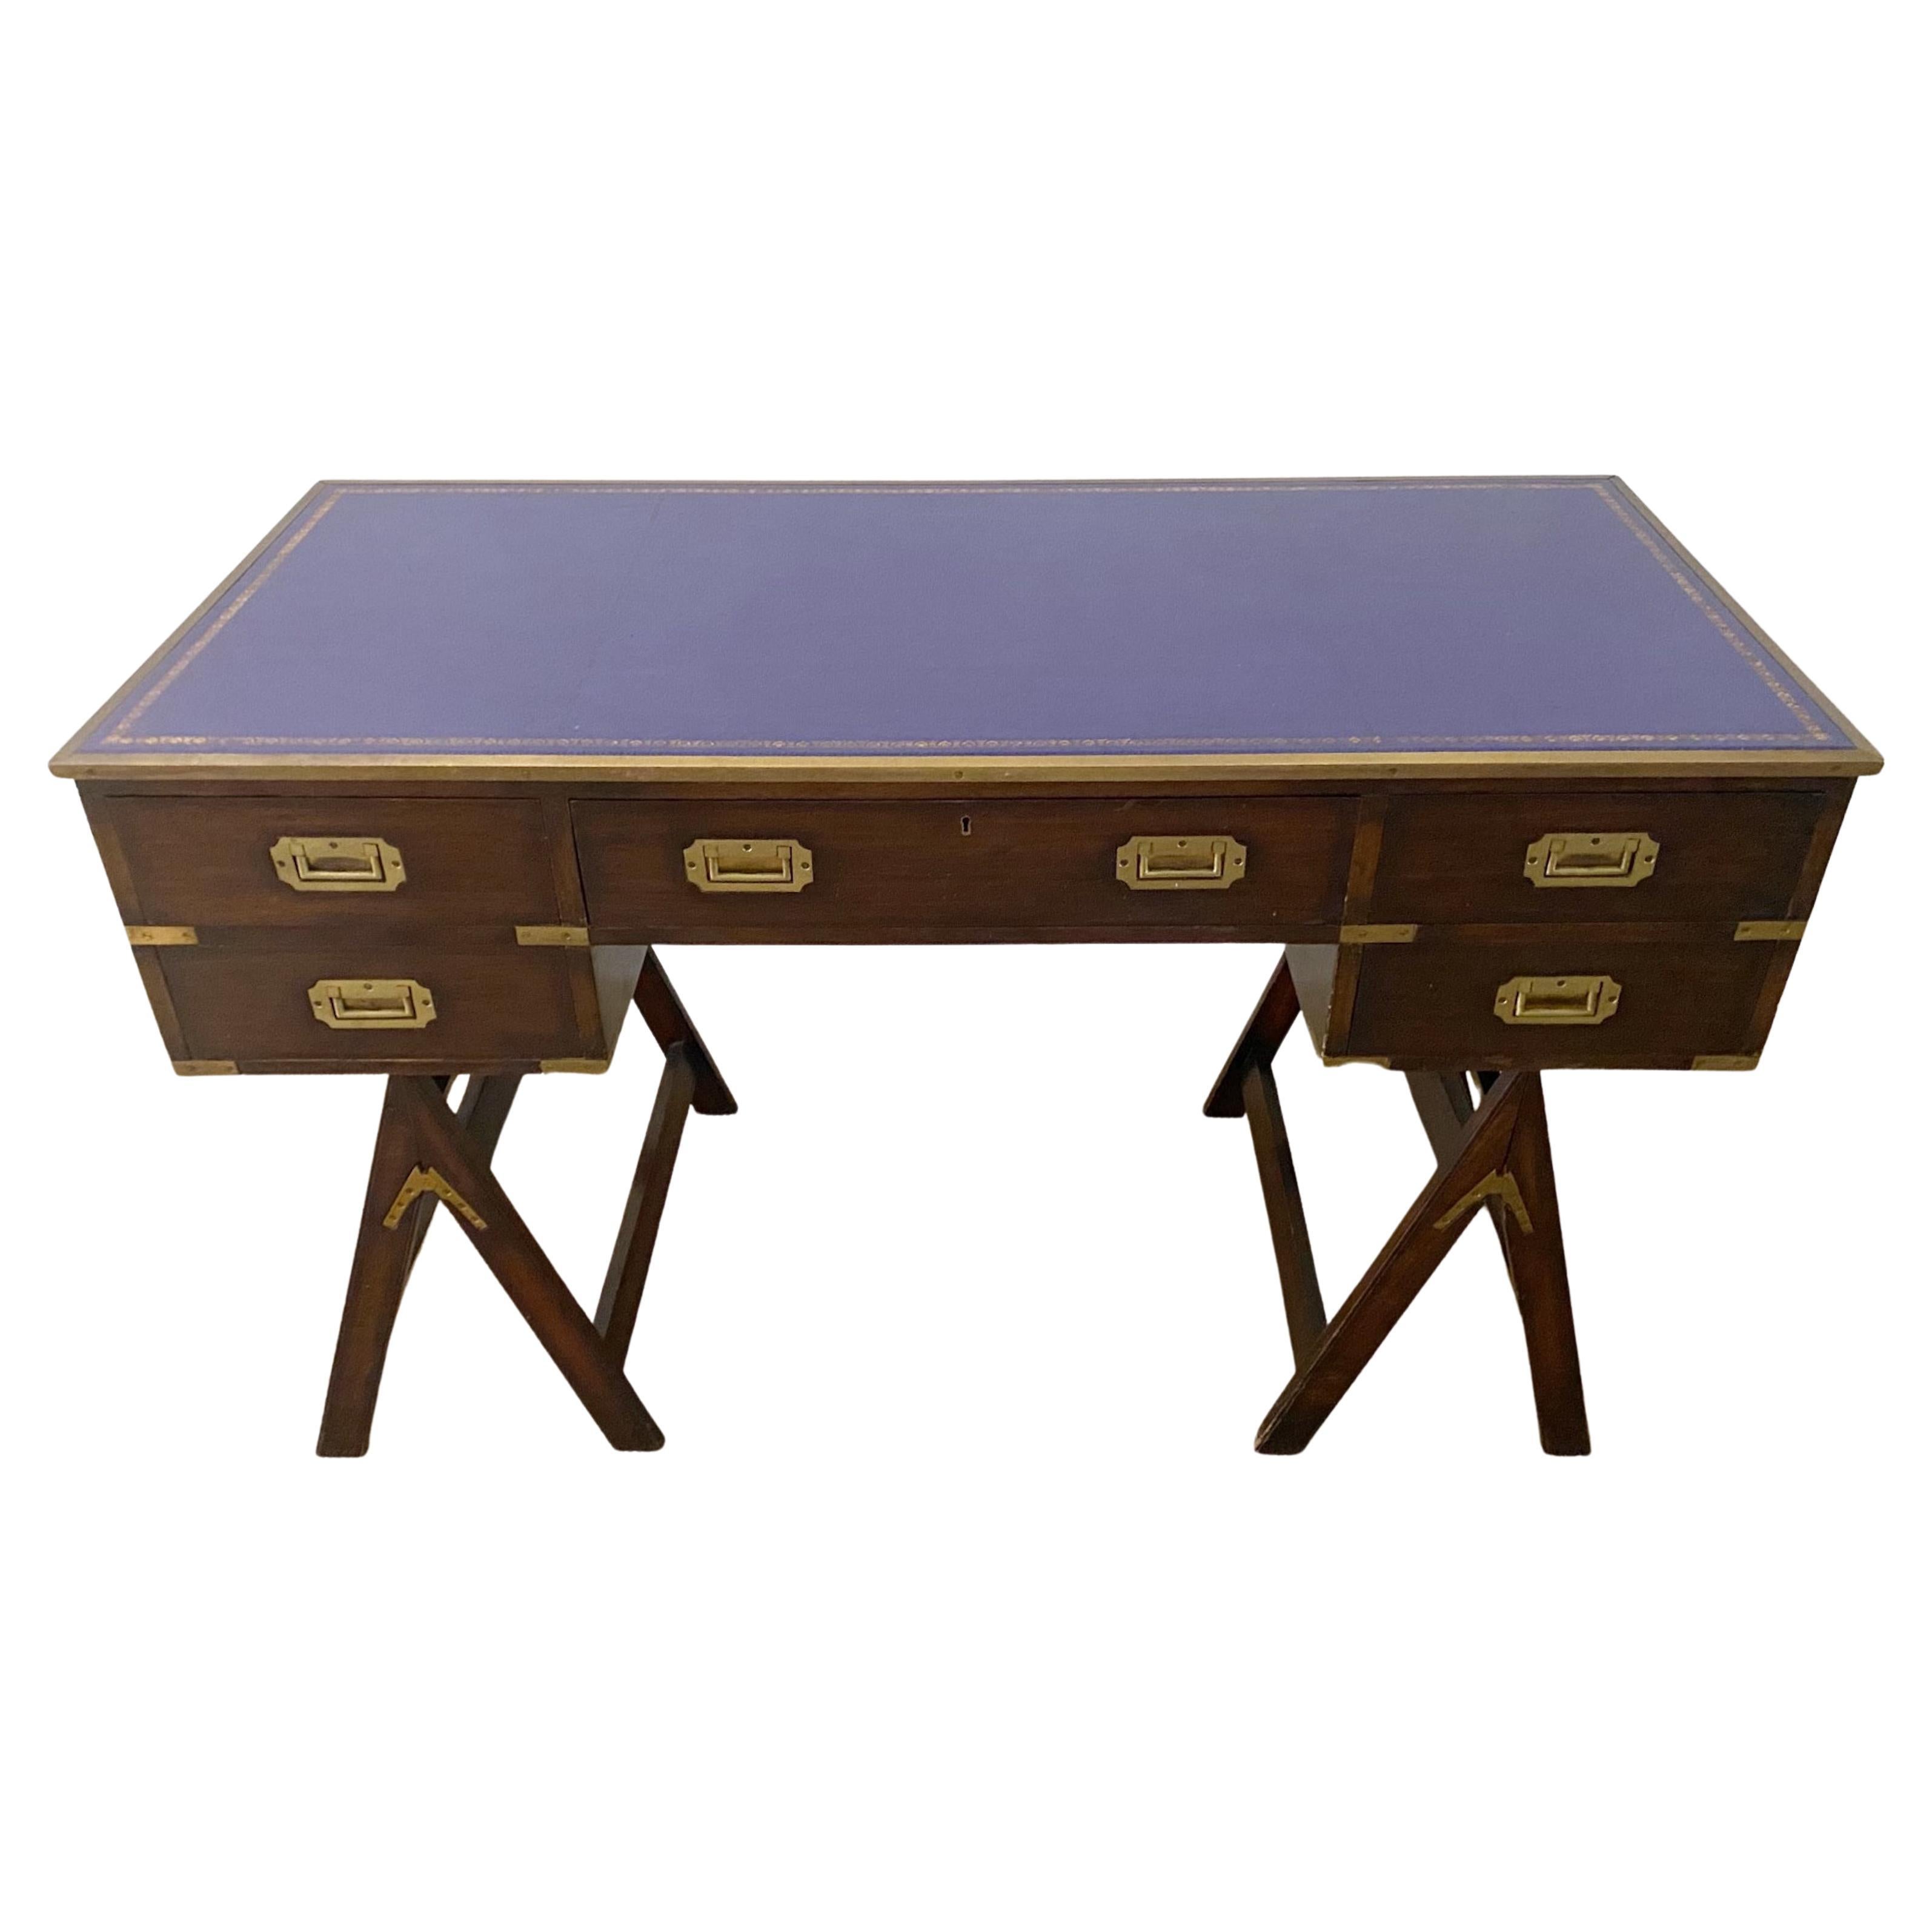 Schreibtisch aus Messing, Mahagoni und Mulberry-Leder im Campaign-Stil der 1970er Jahre